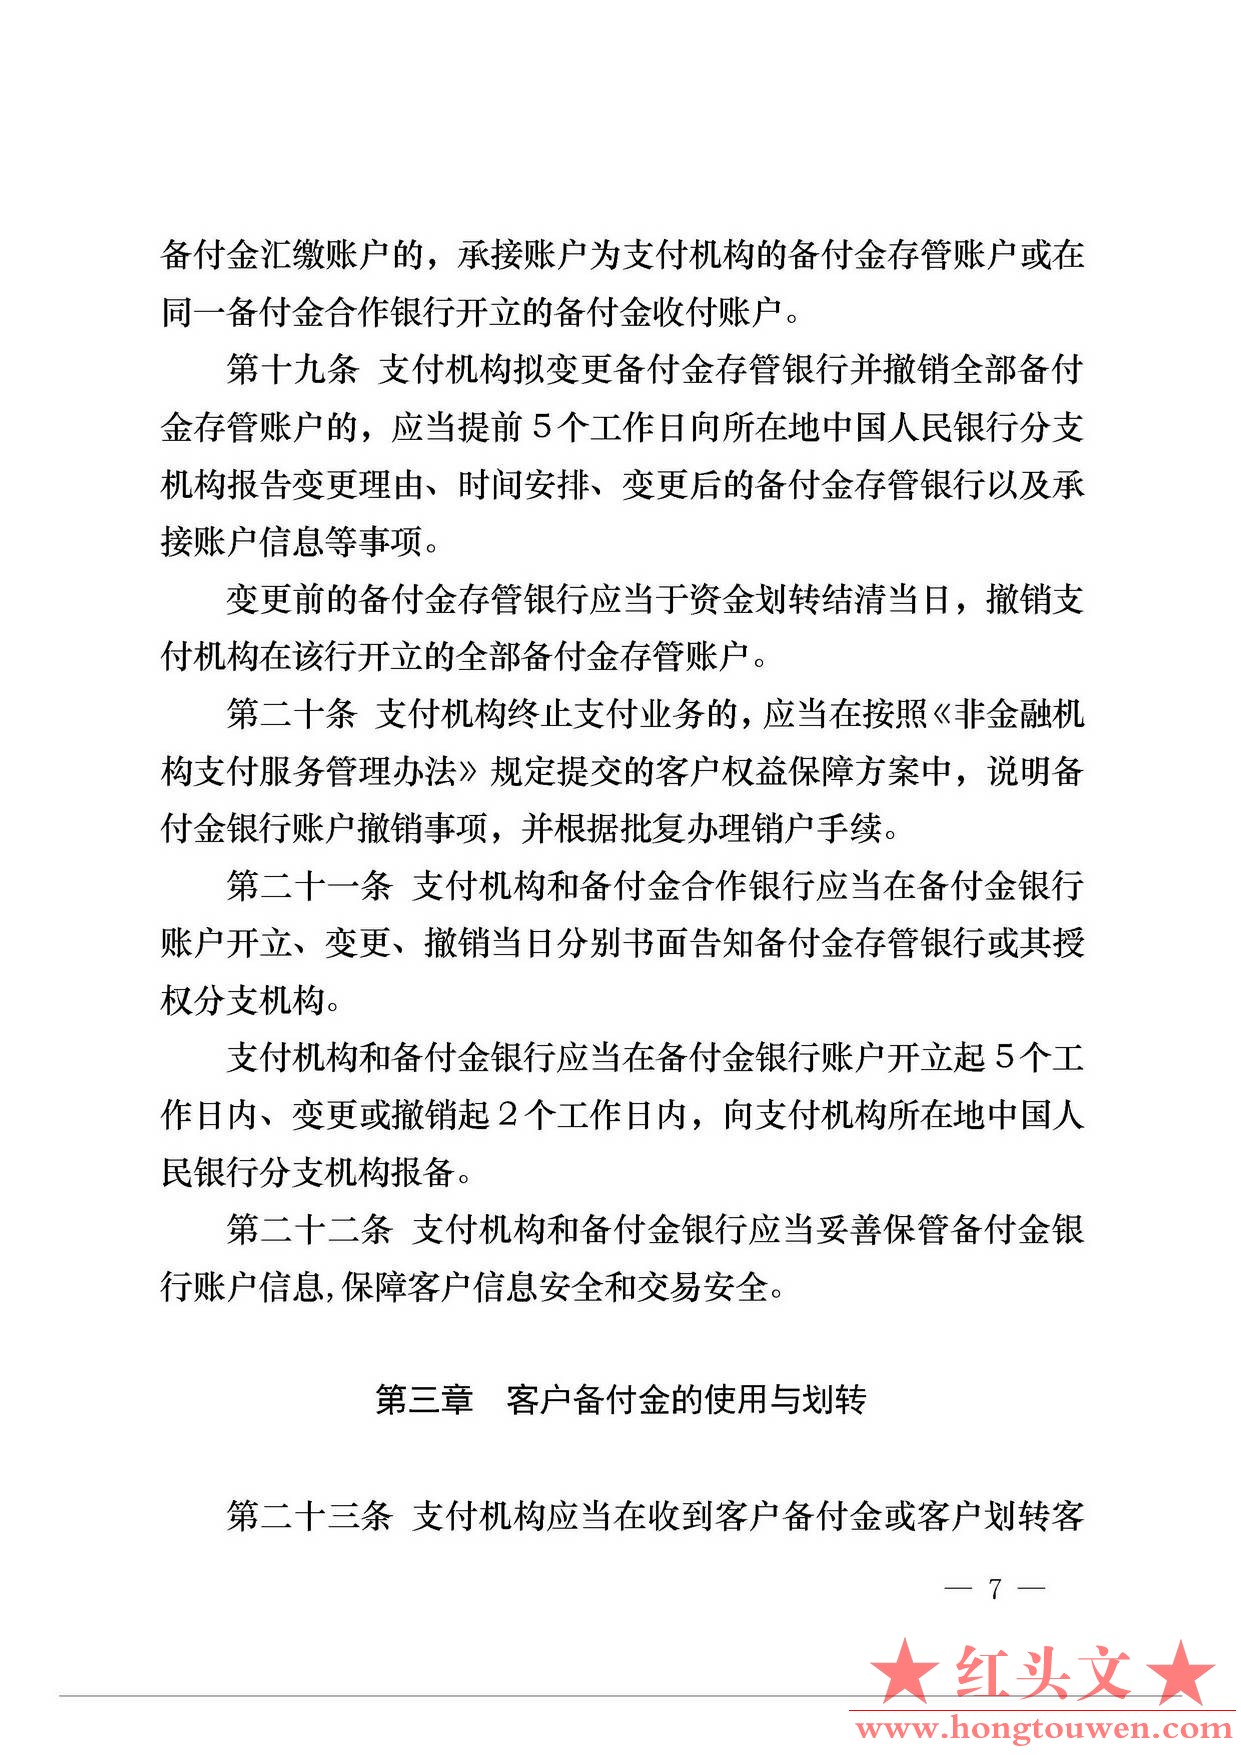 中国人民银行公告[2013]6号-《支付机构客户备付金存管办法》_页面_07.jpg.jpg